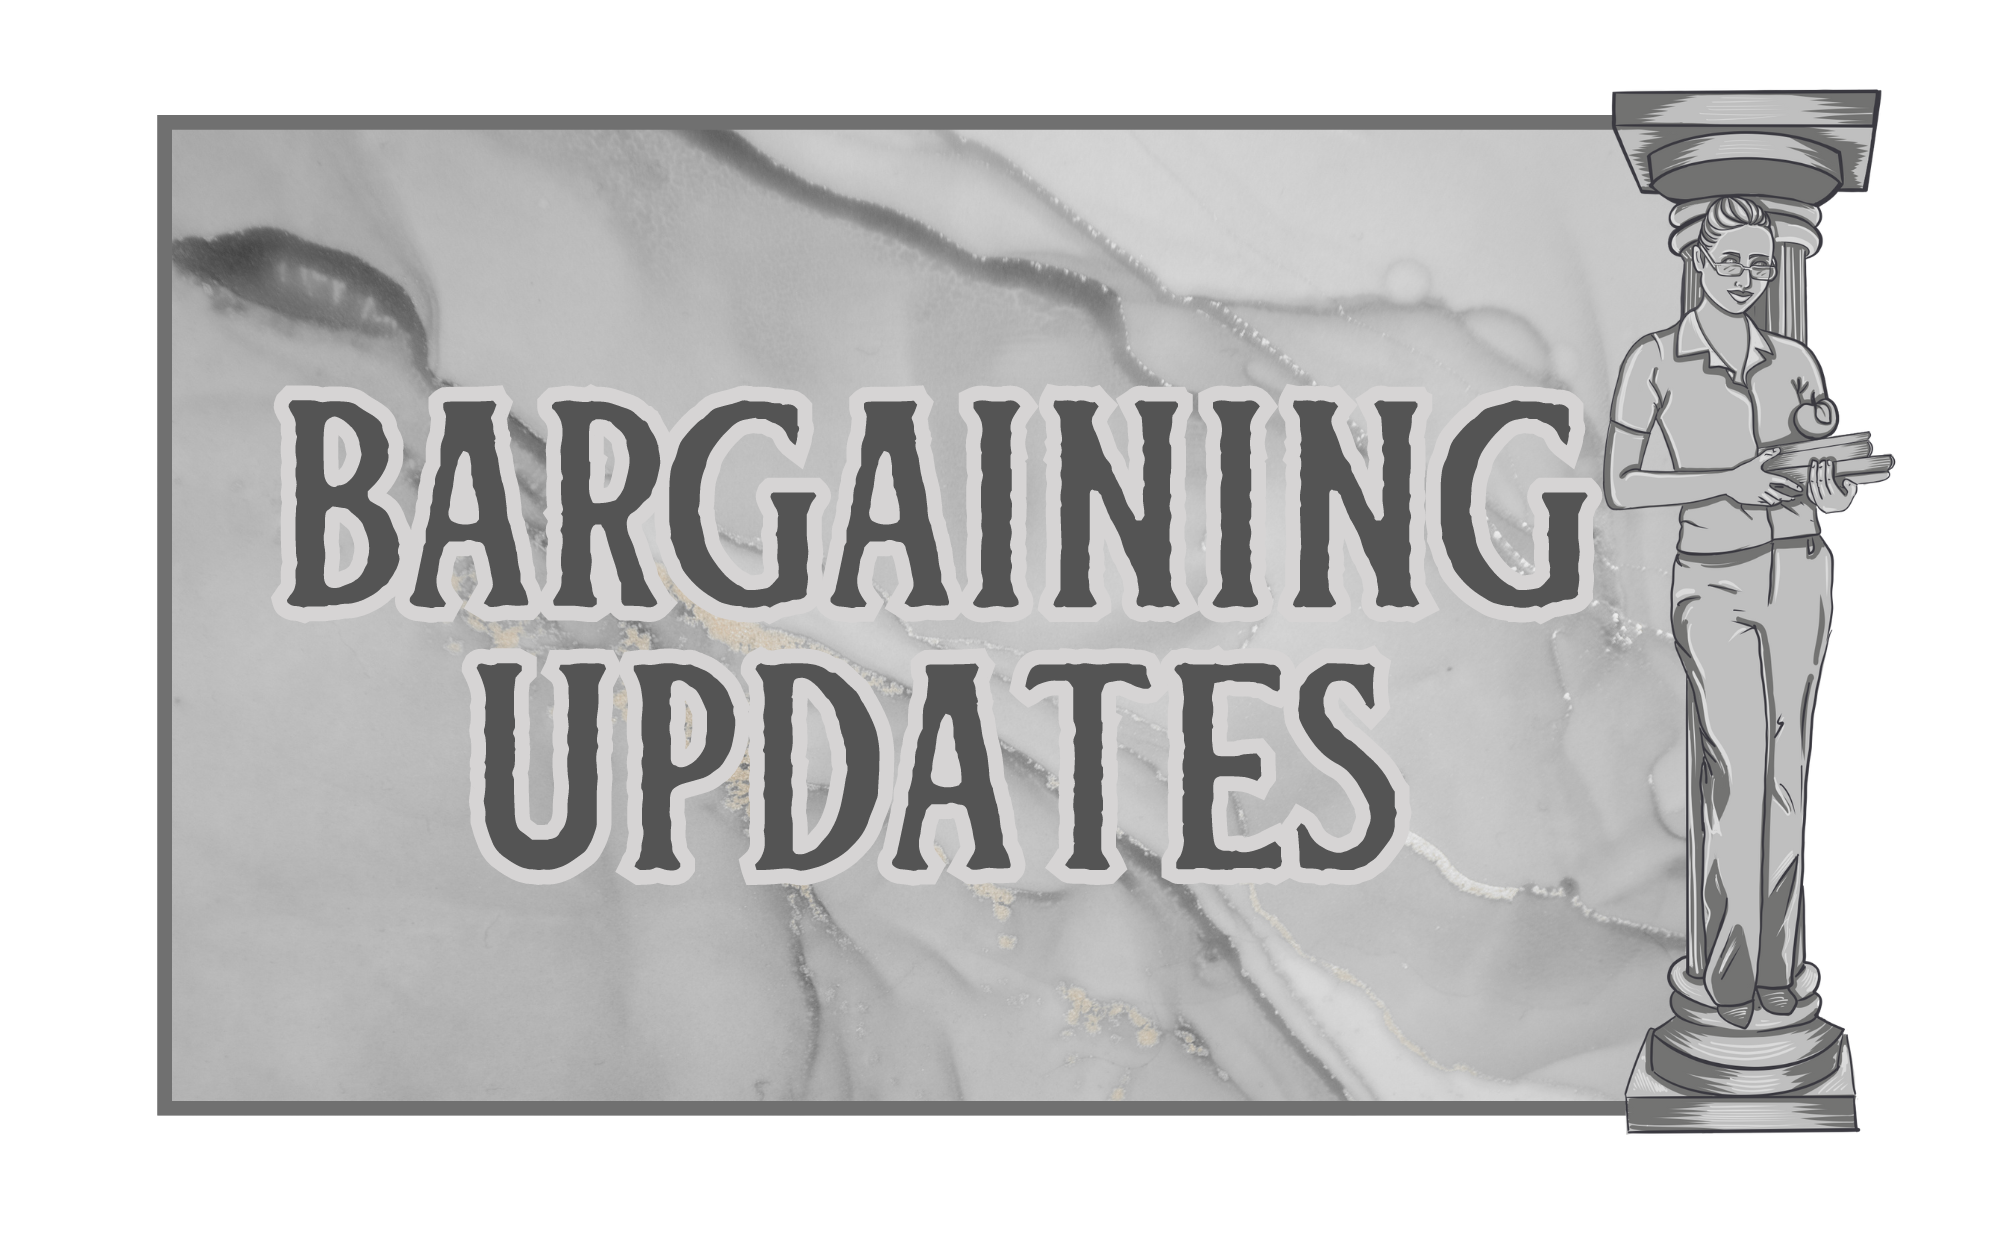 Bargaining Updates